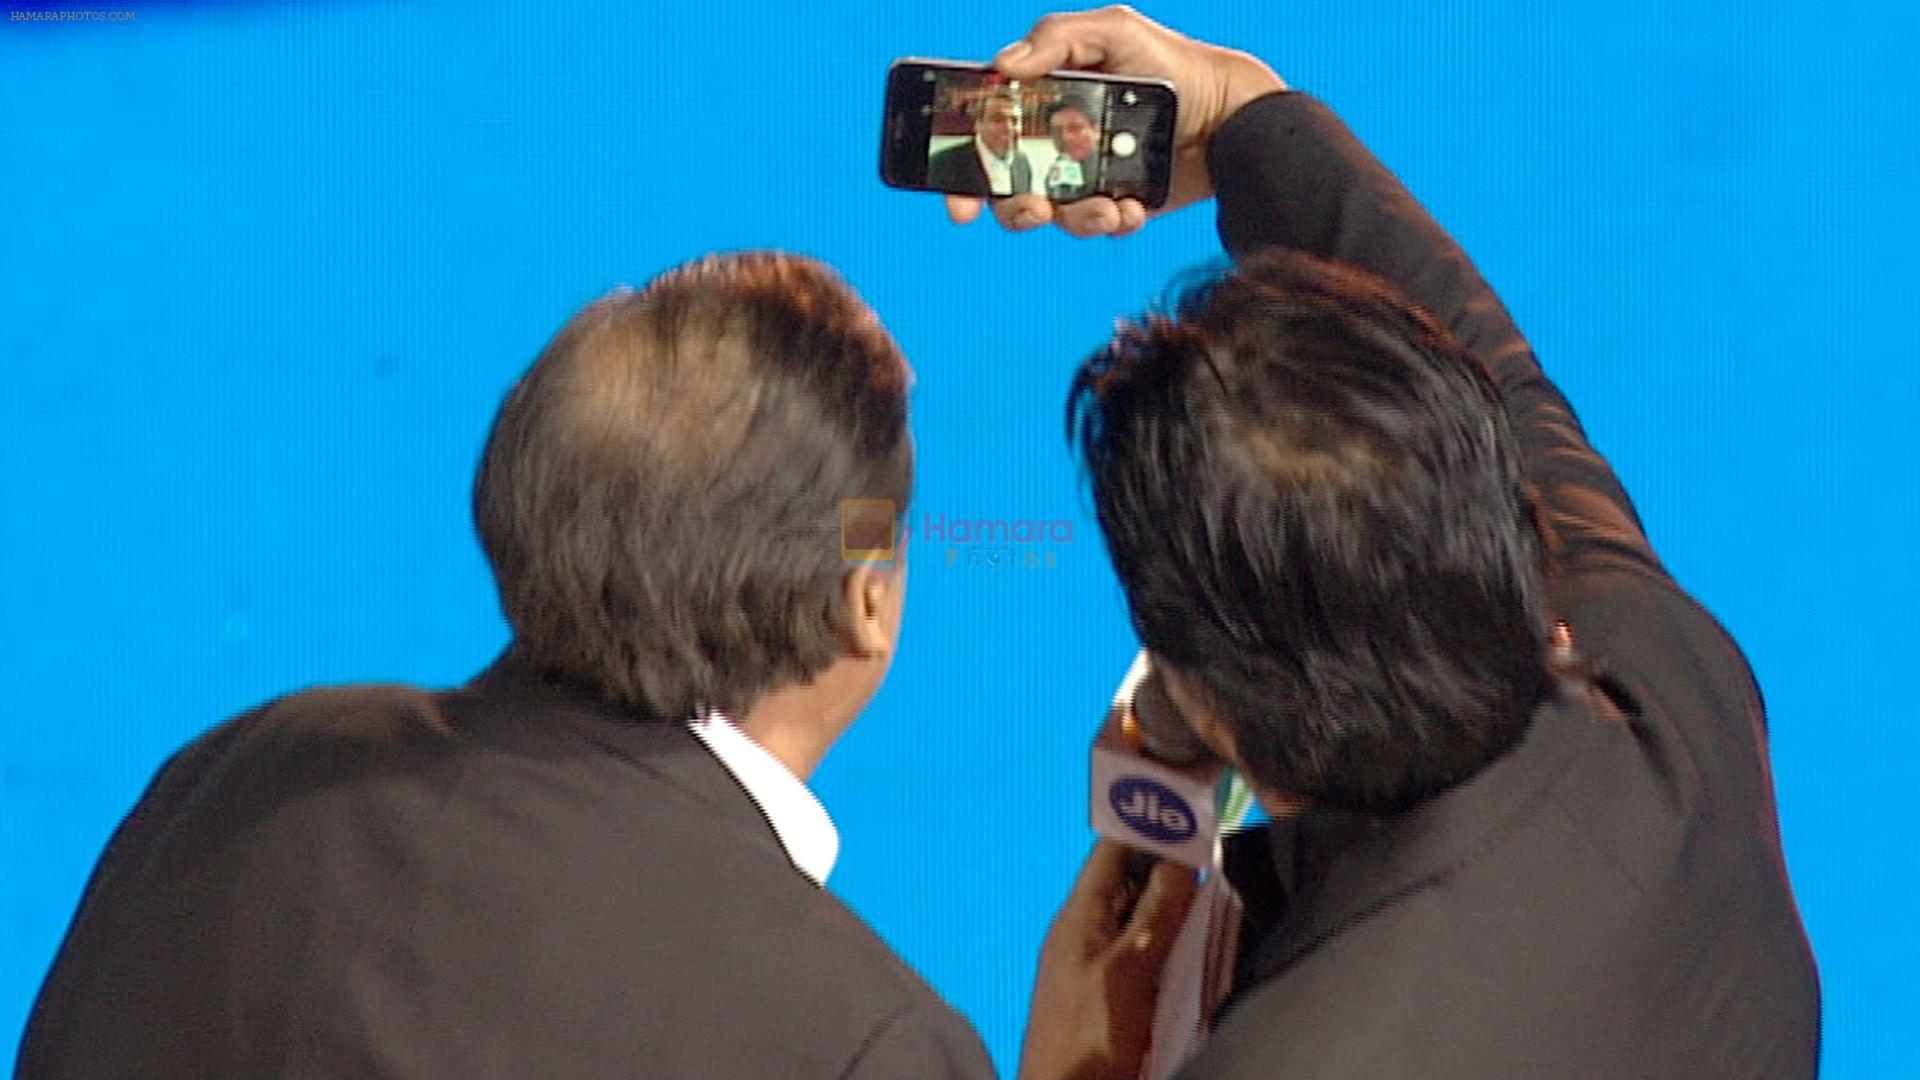 srk takes selfie with mukesh ambani at jio launch